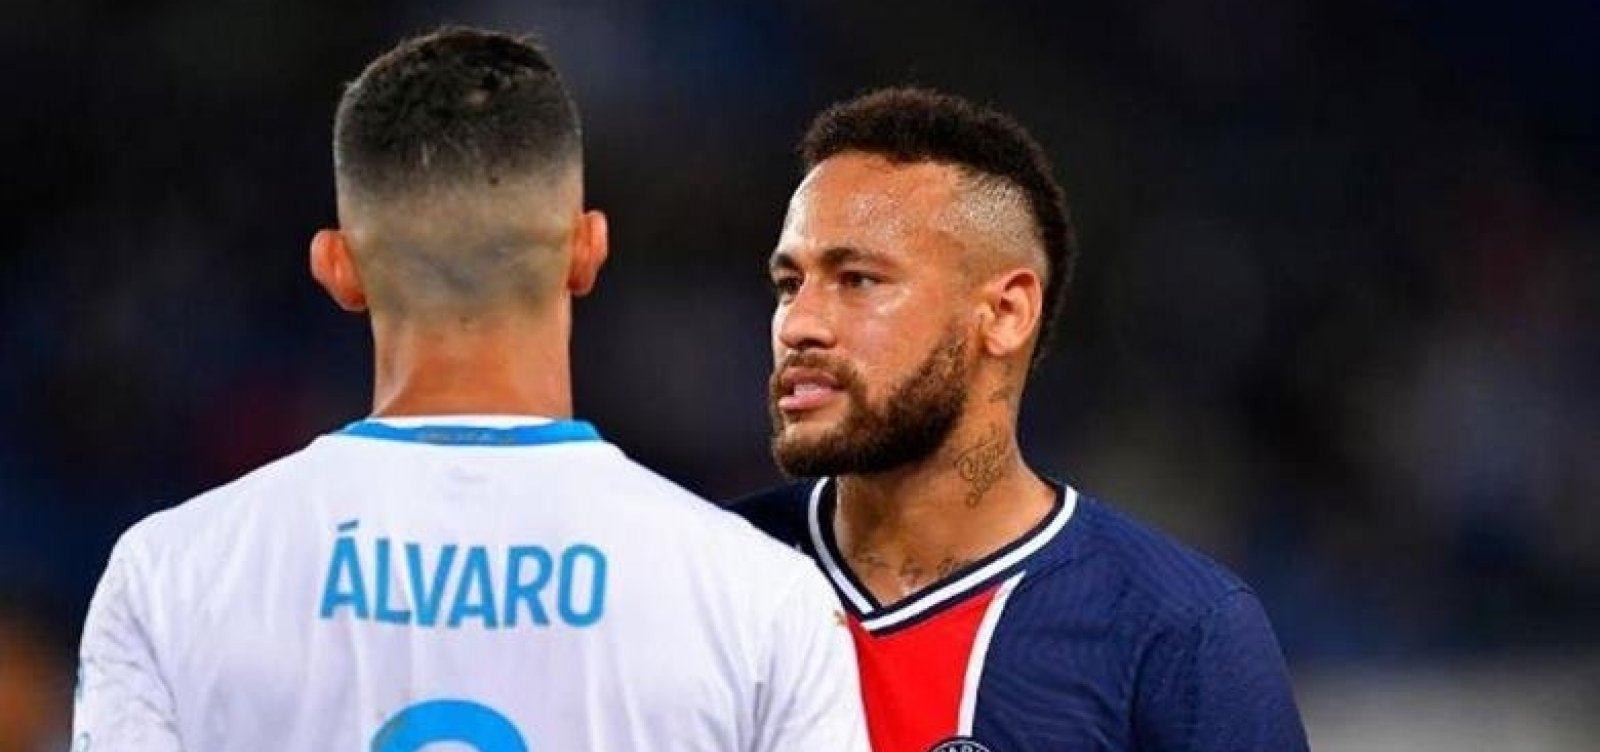 Liga francesa decide não punir Neymar e González por ‘insuficiência de provas’